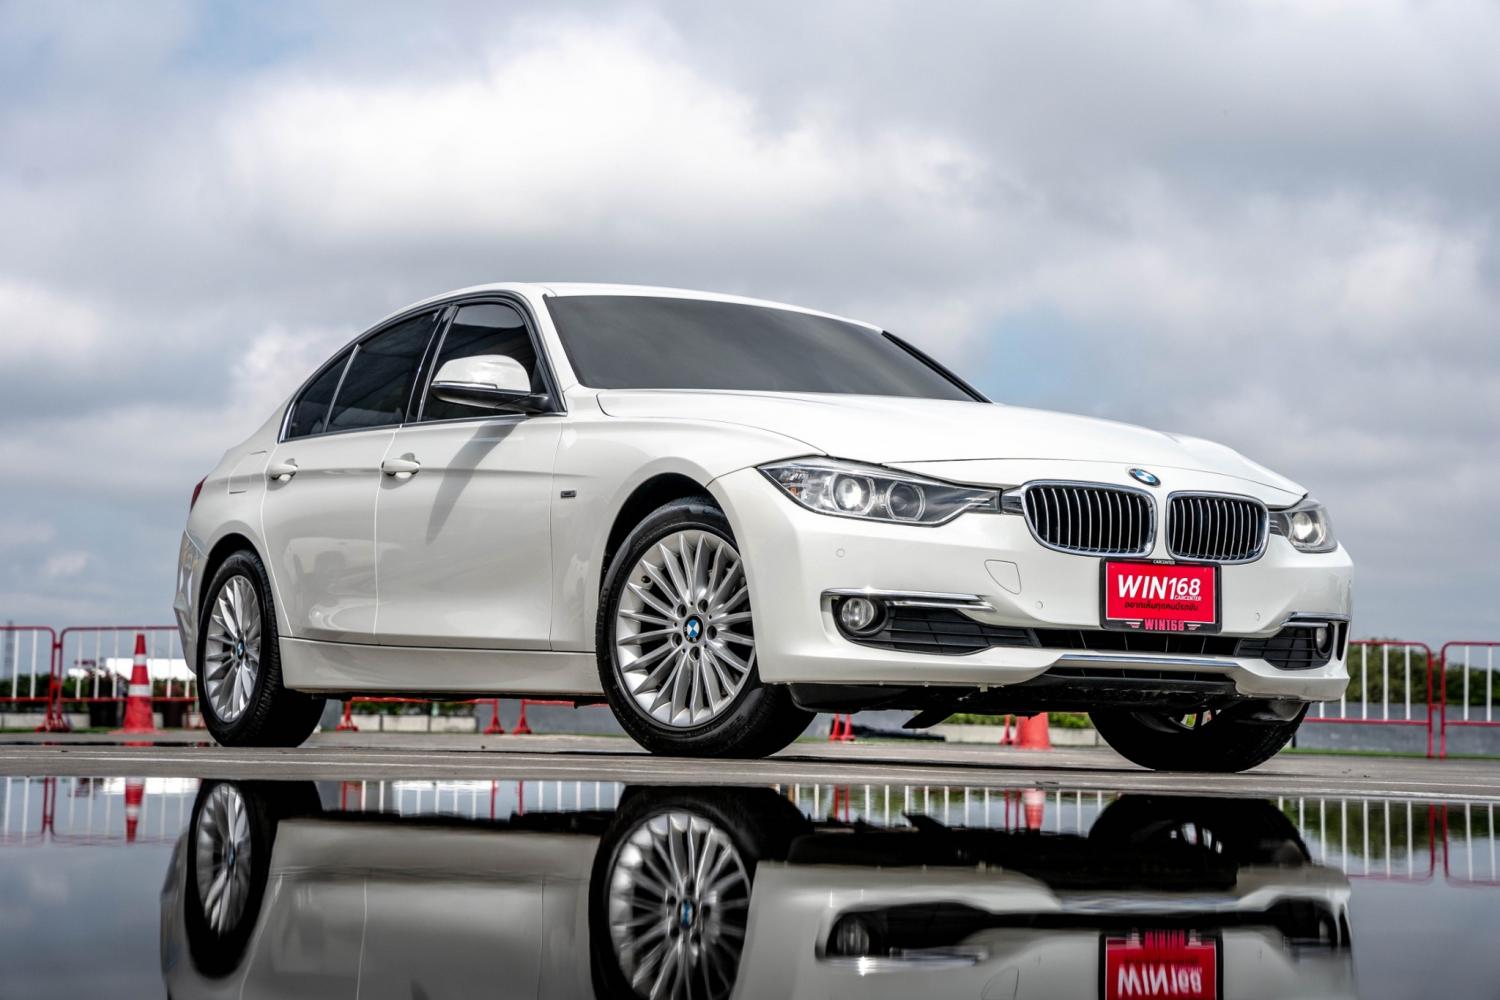 BMW 320D Luxury Line (F30) 2.0L 8AT TwinTurbo ปี2014 (BM031) BMW > F30 320d  Luxury- Win 168 Carcenter